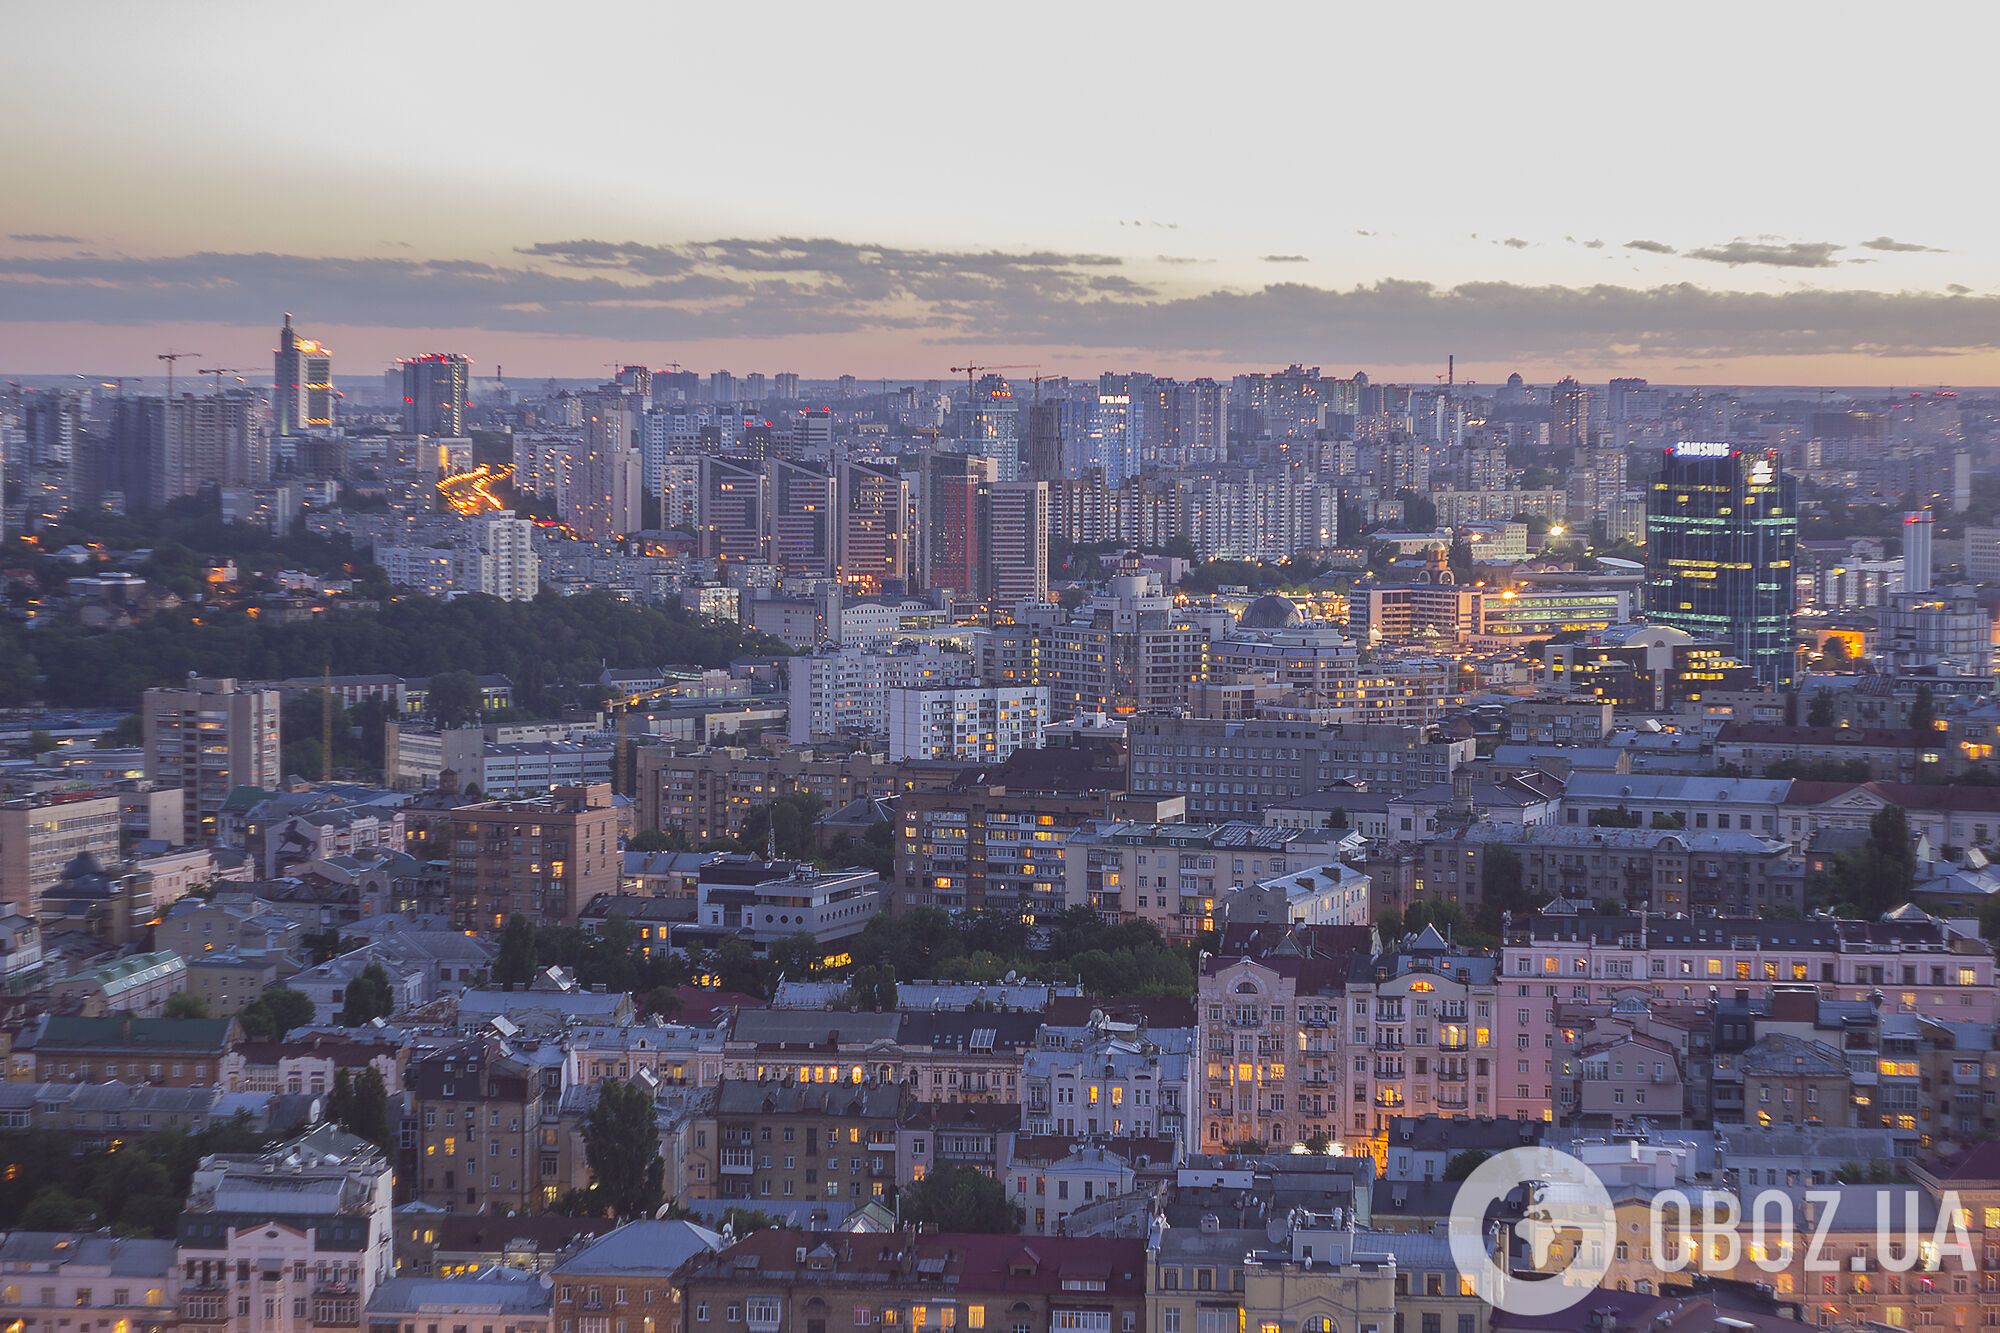 Огни Киева:  удивительные фото столицы с высоты